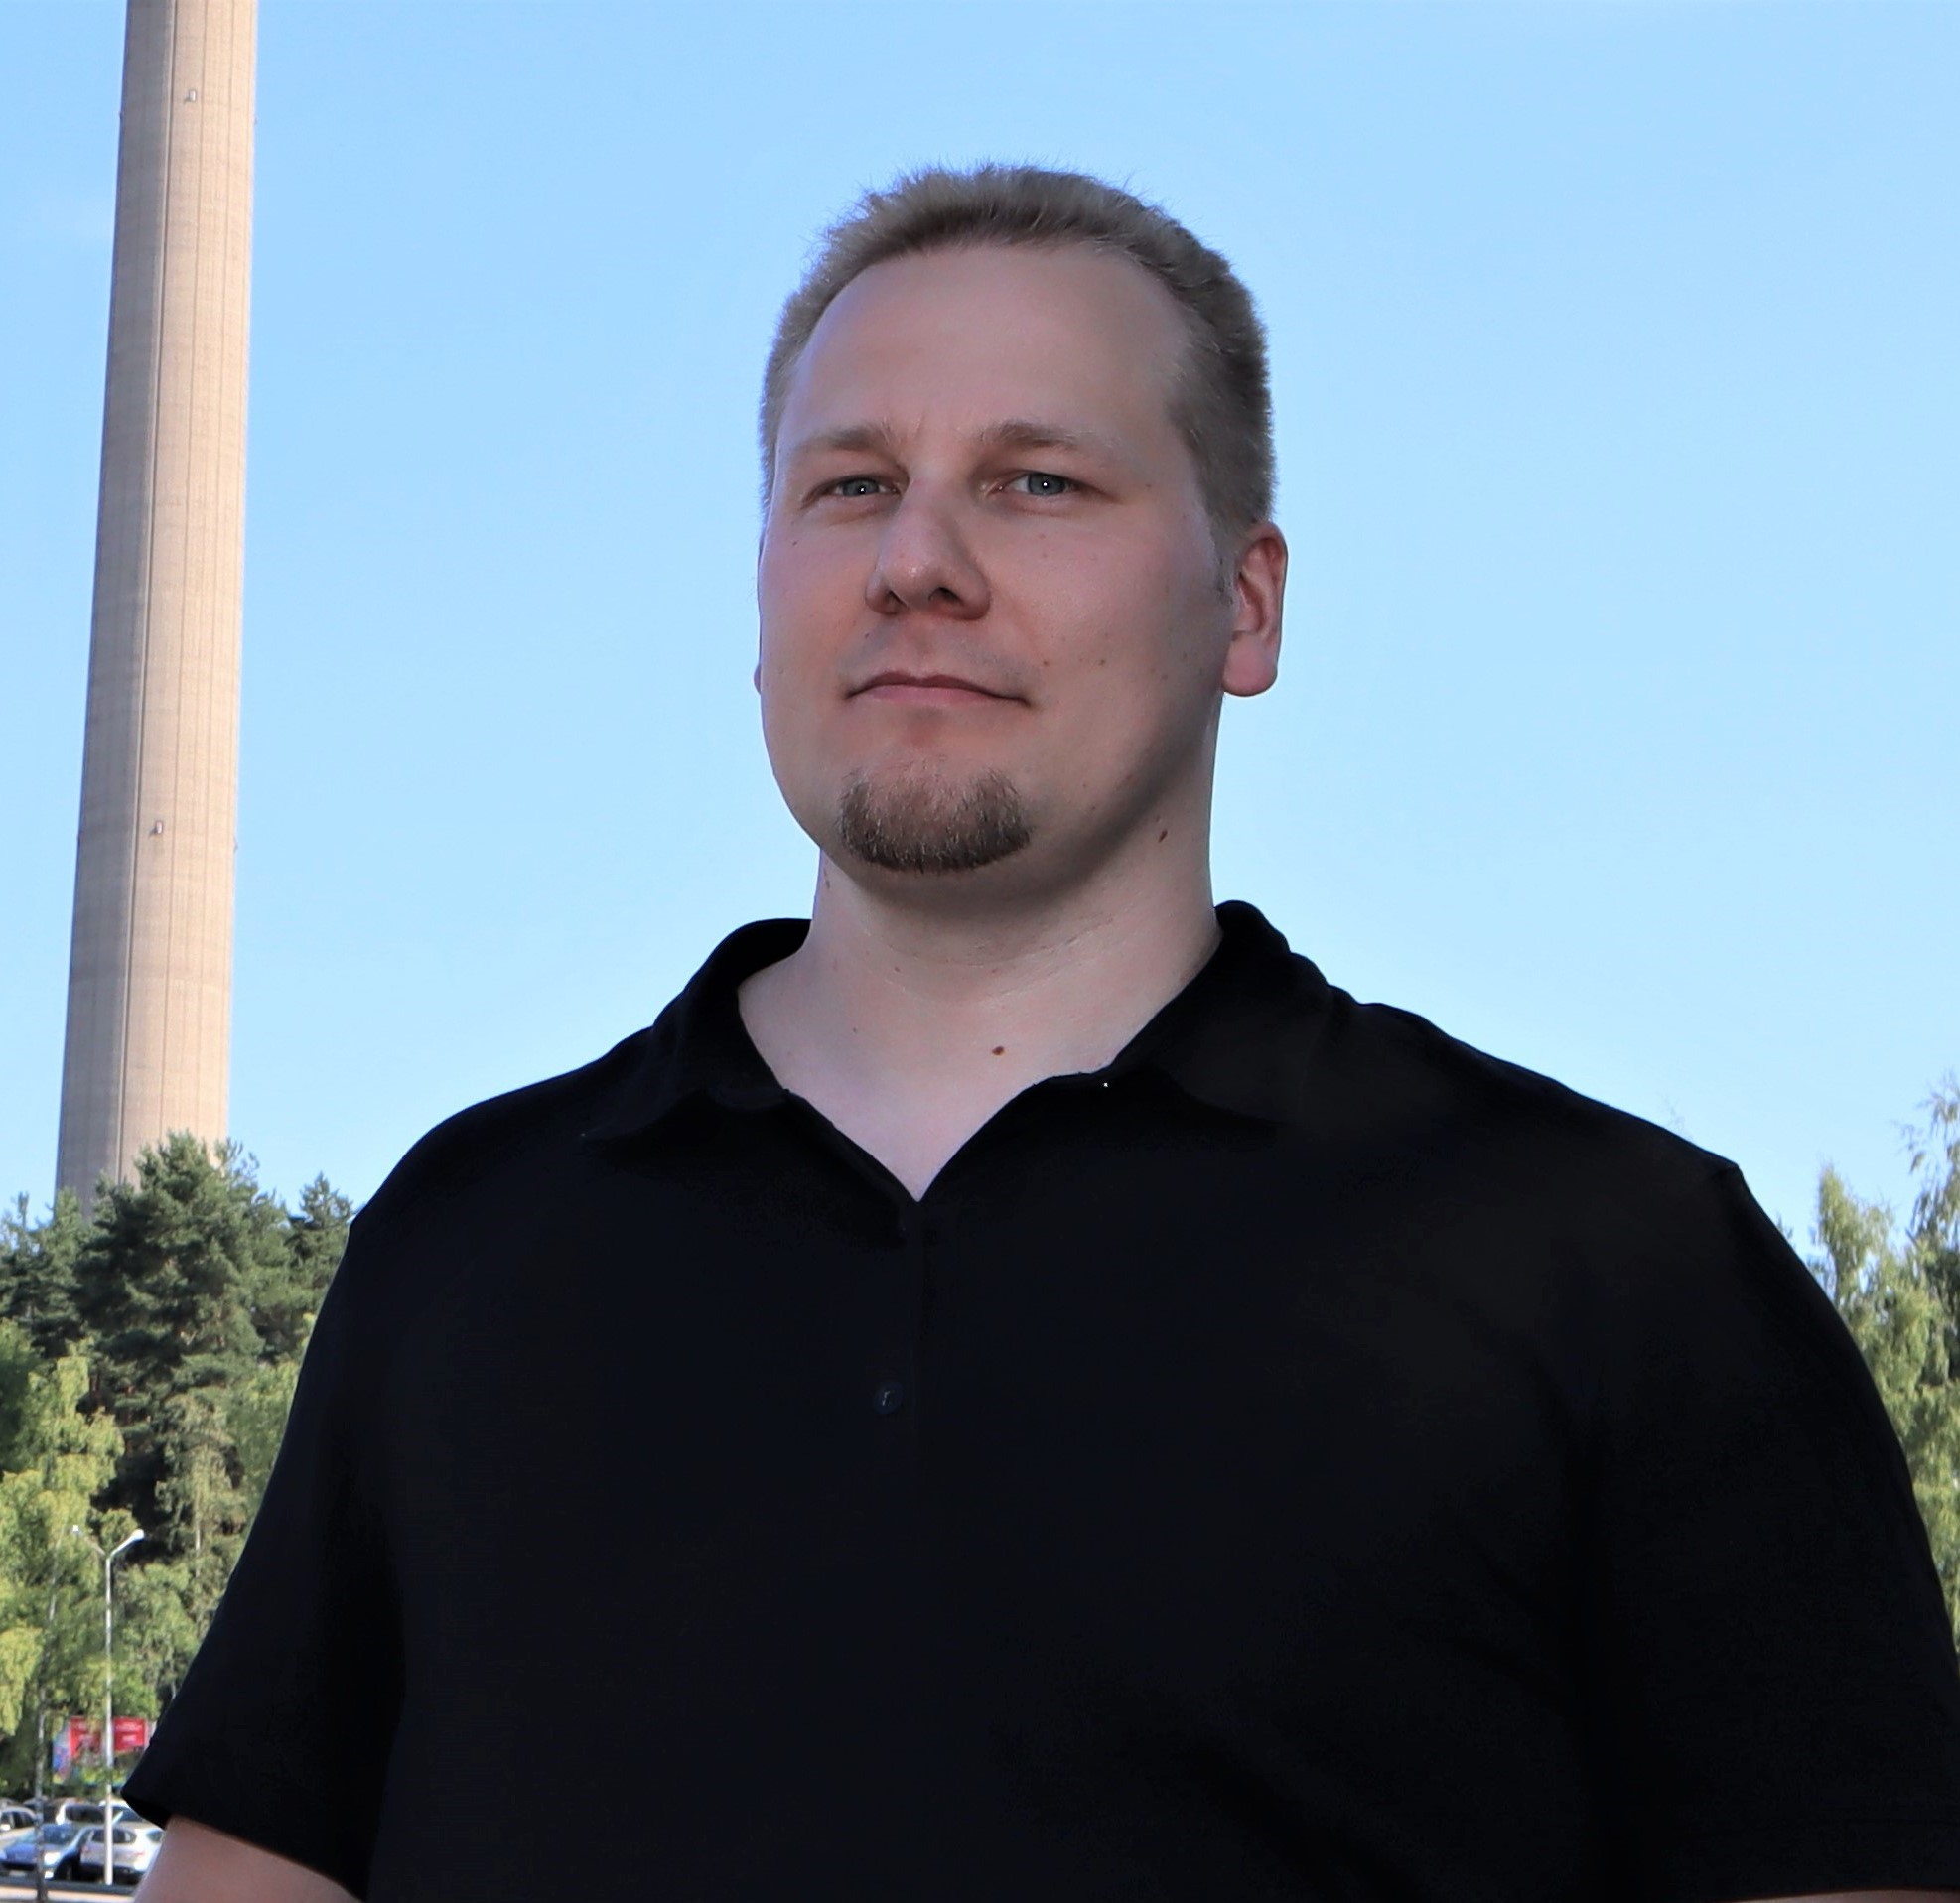 Toni Luopajärvi (oik./alh.) on kuuluu Wiiste Oy:n perustajiin. Hän toimii tällä hetkellä Wiisteen kehitysjohtajana.